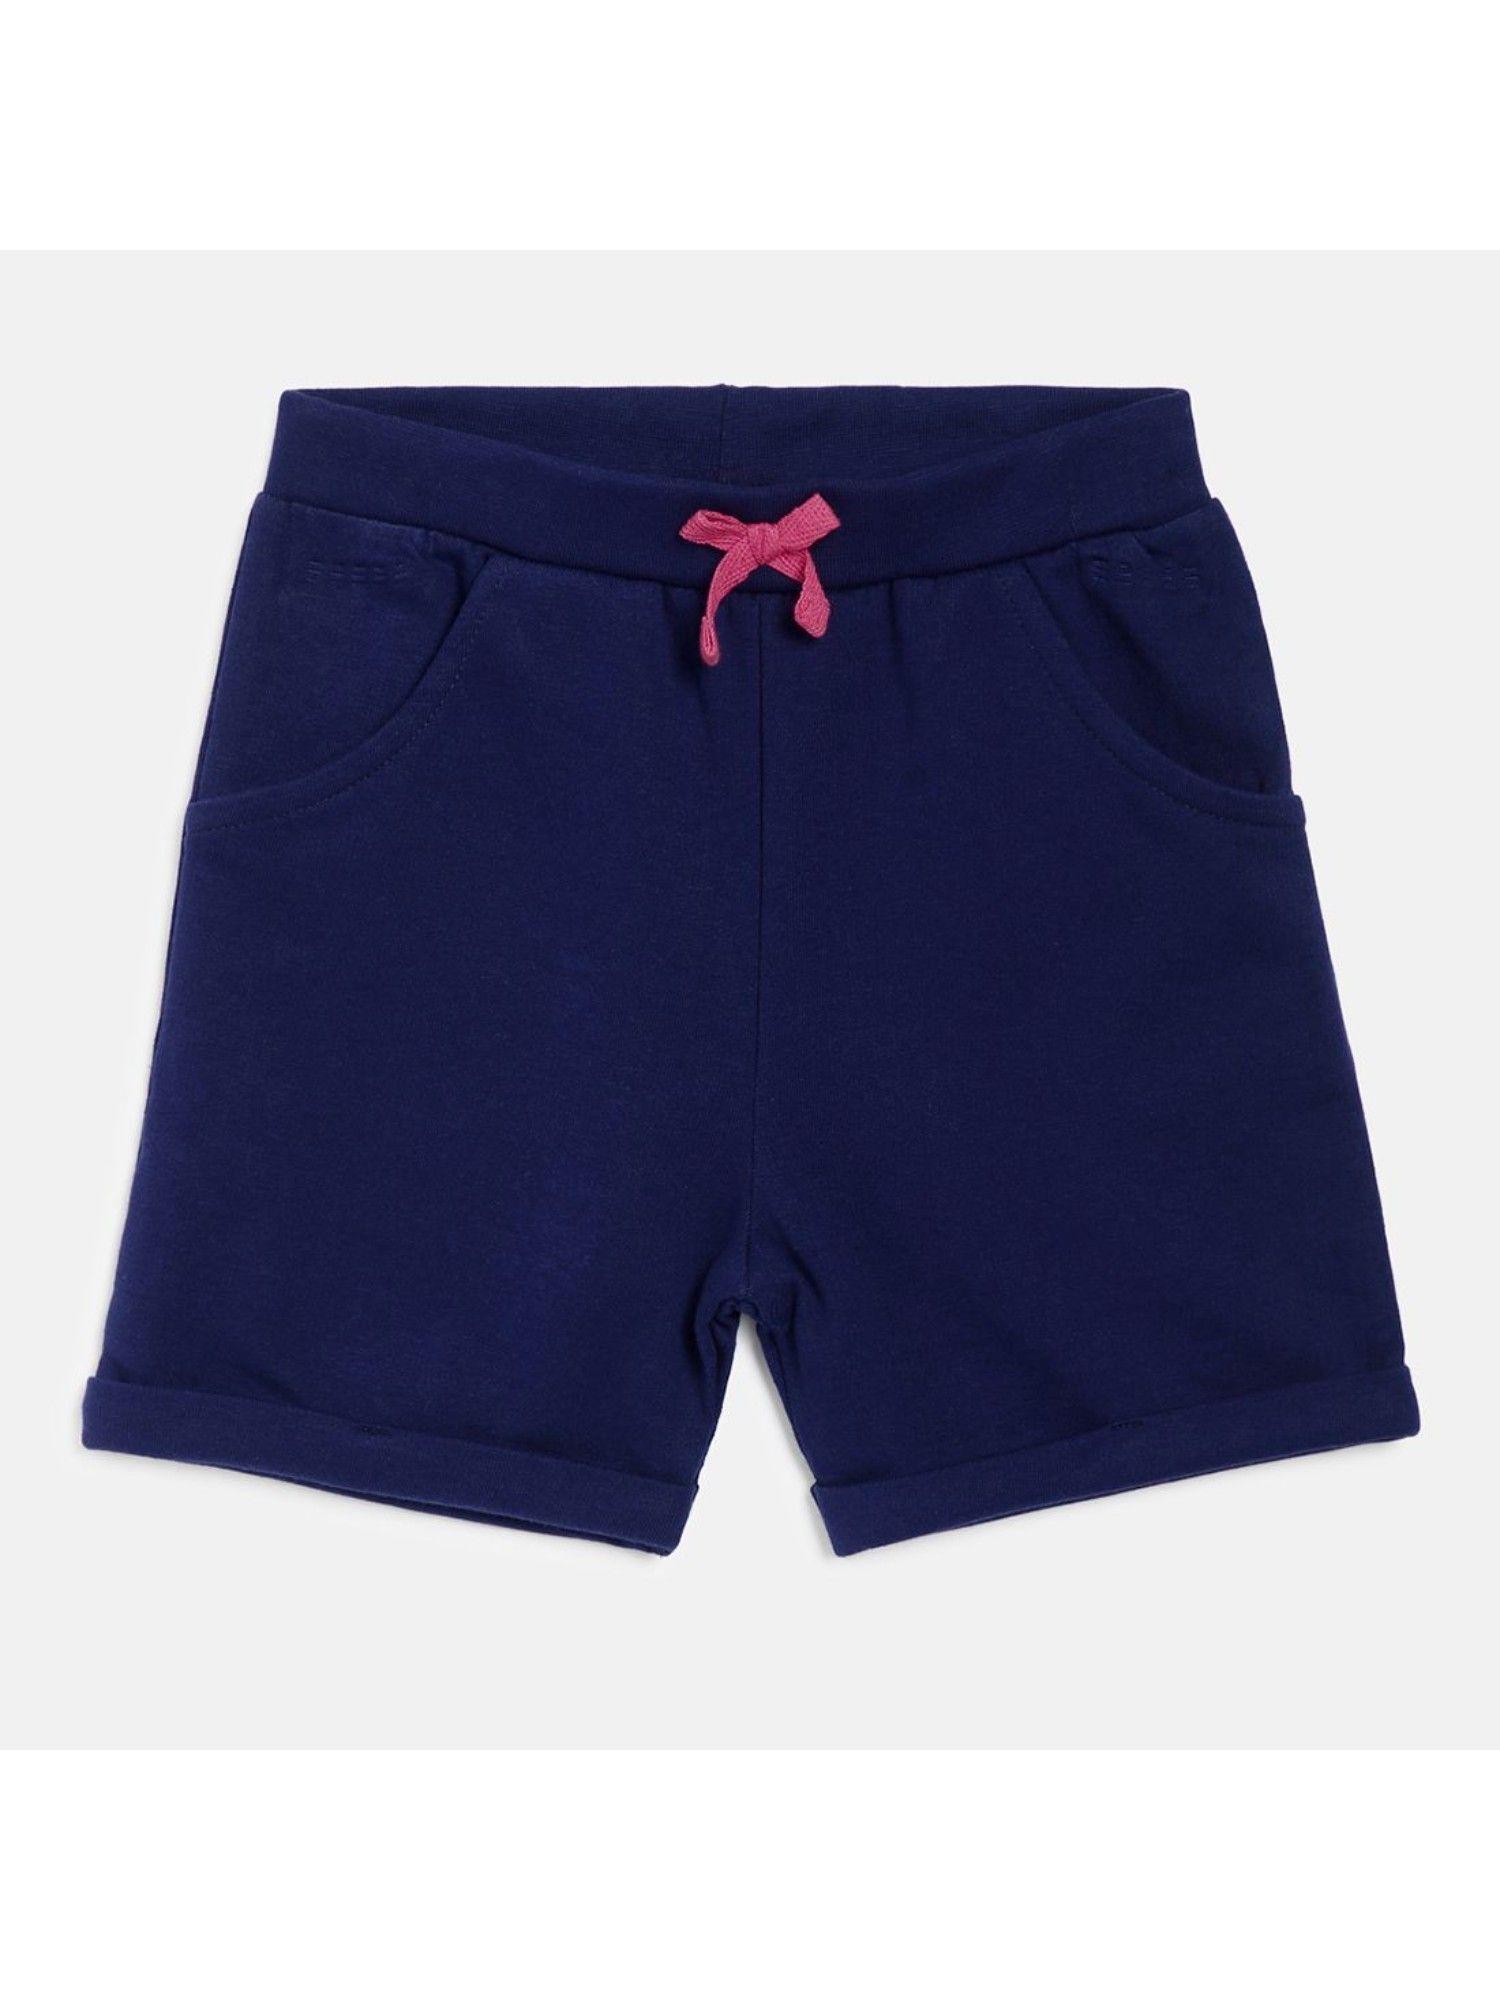 kids-girls-navy-shorts